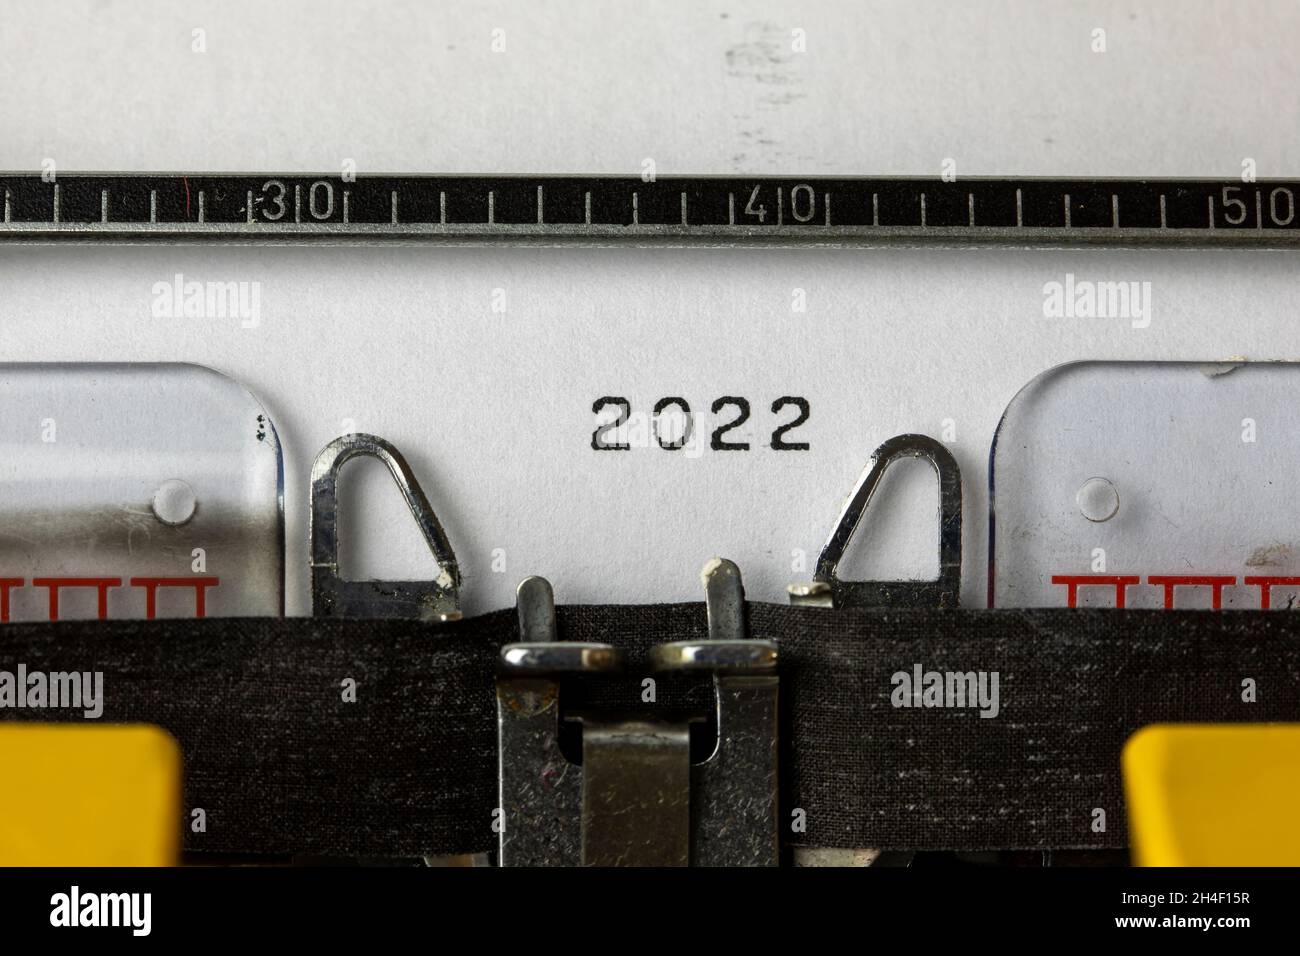 2022 escrito en una máquina de escribir vieja Foto de stock